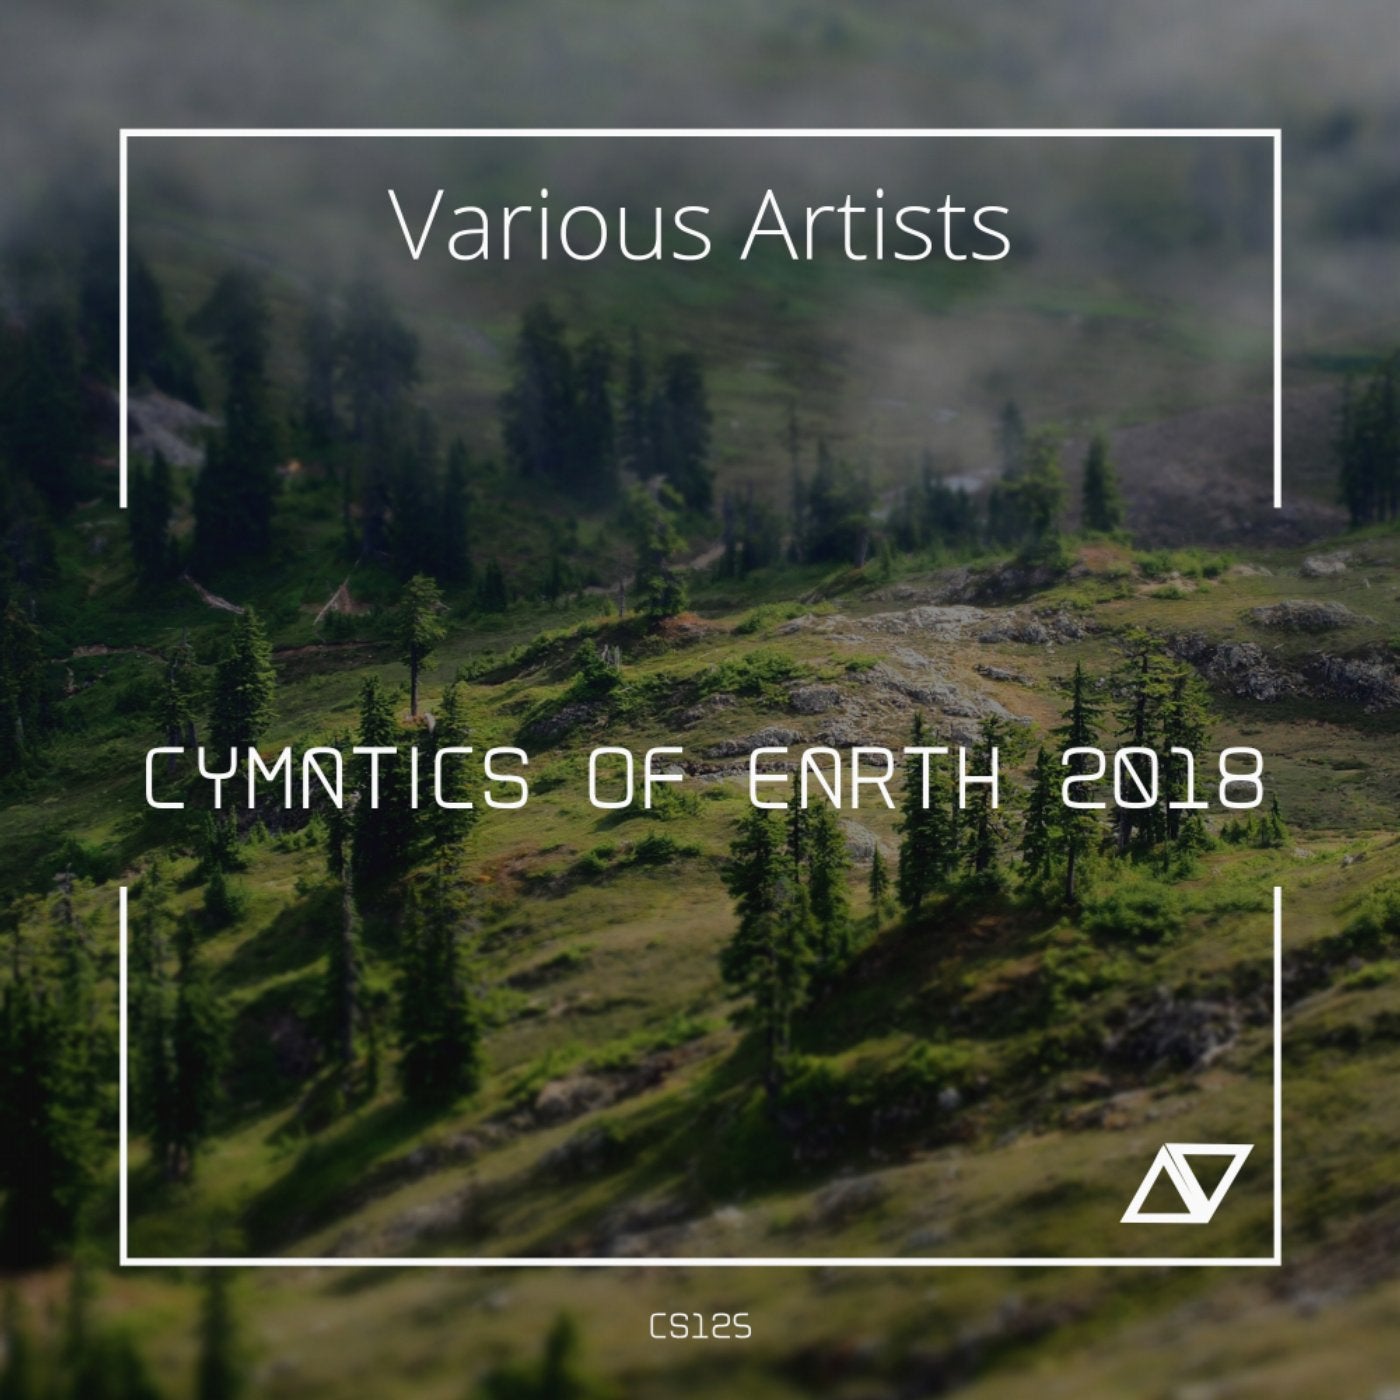 Cymatics of Earth 2018